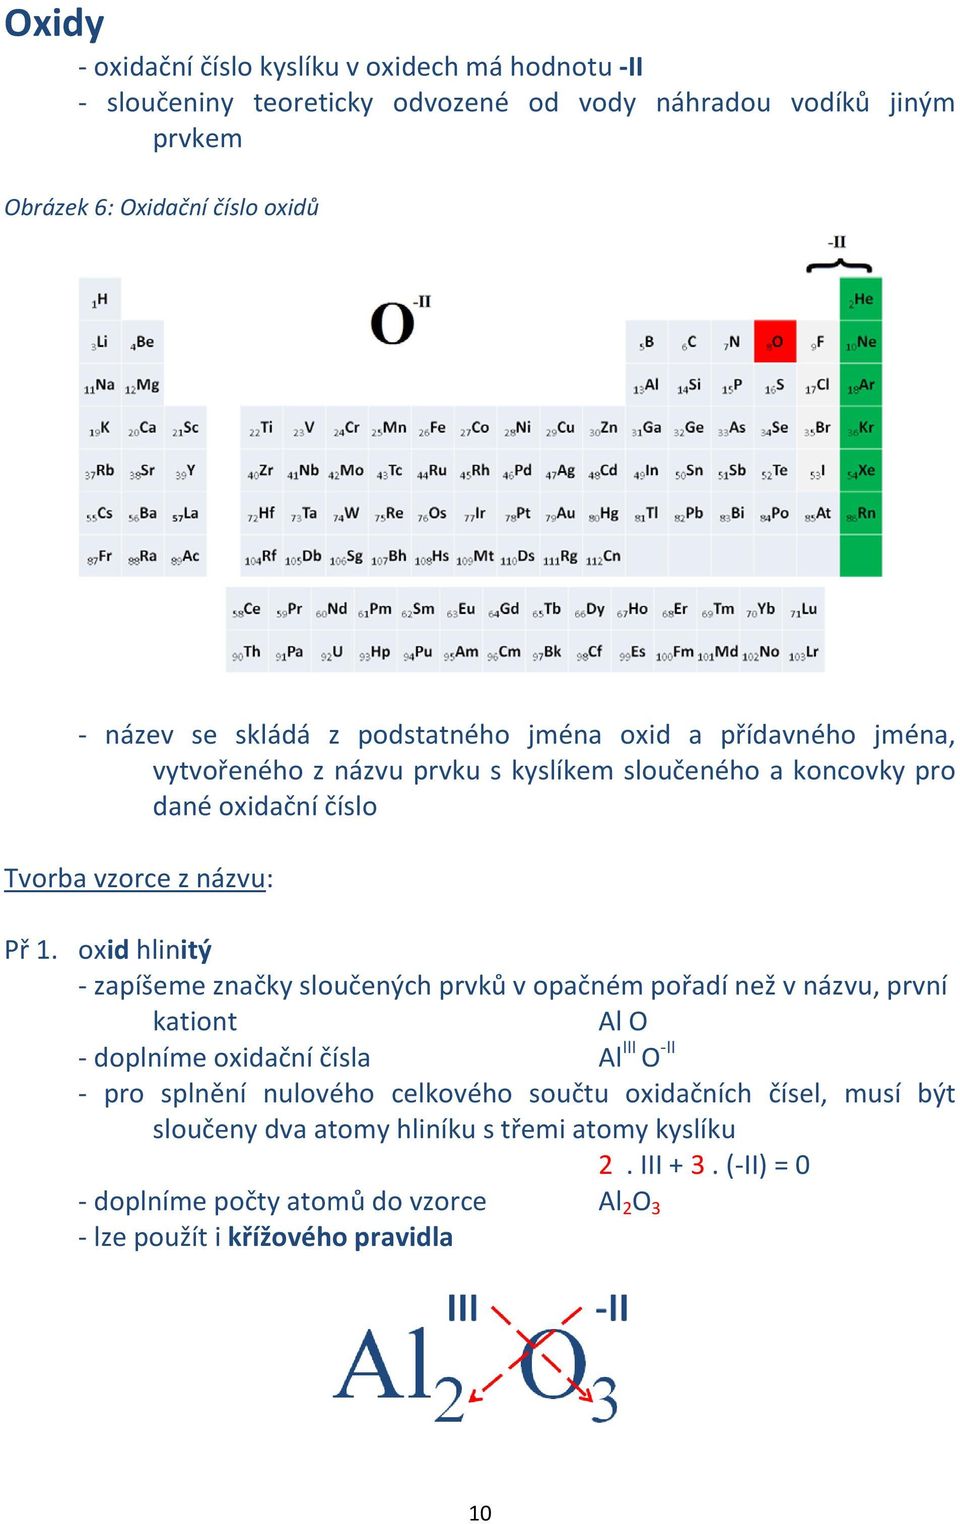 oxid hlinitý - zapíšeme značky sloučených prvků v opačném pořadí než v názvu, první kationt Al O - doplníme oxidační čísla Al III O -II - pro splnění nulového celkového